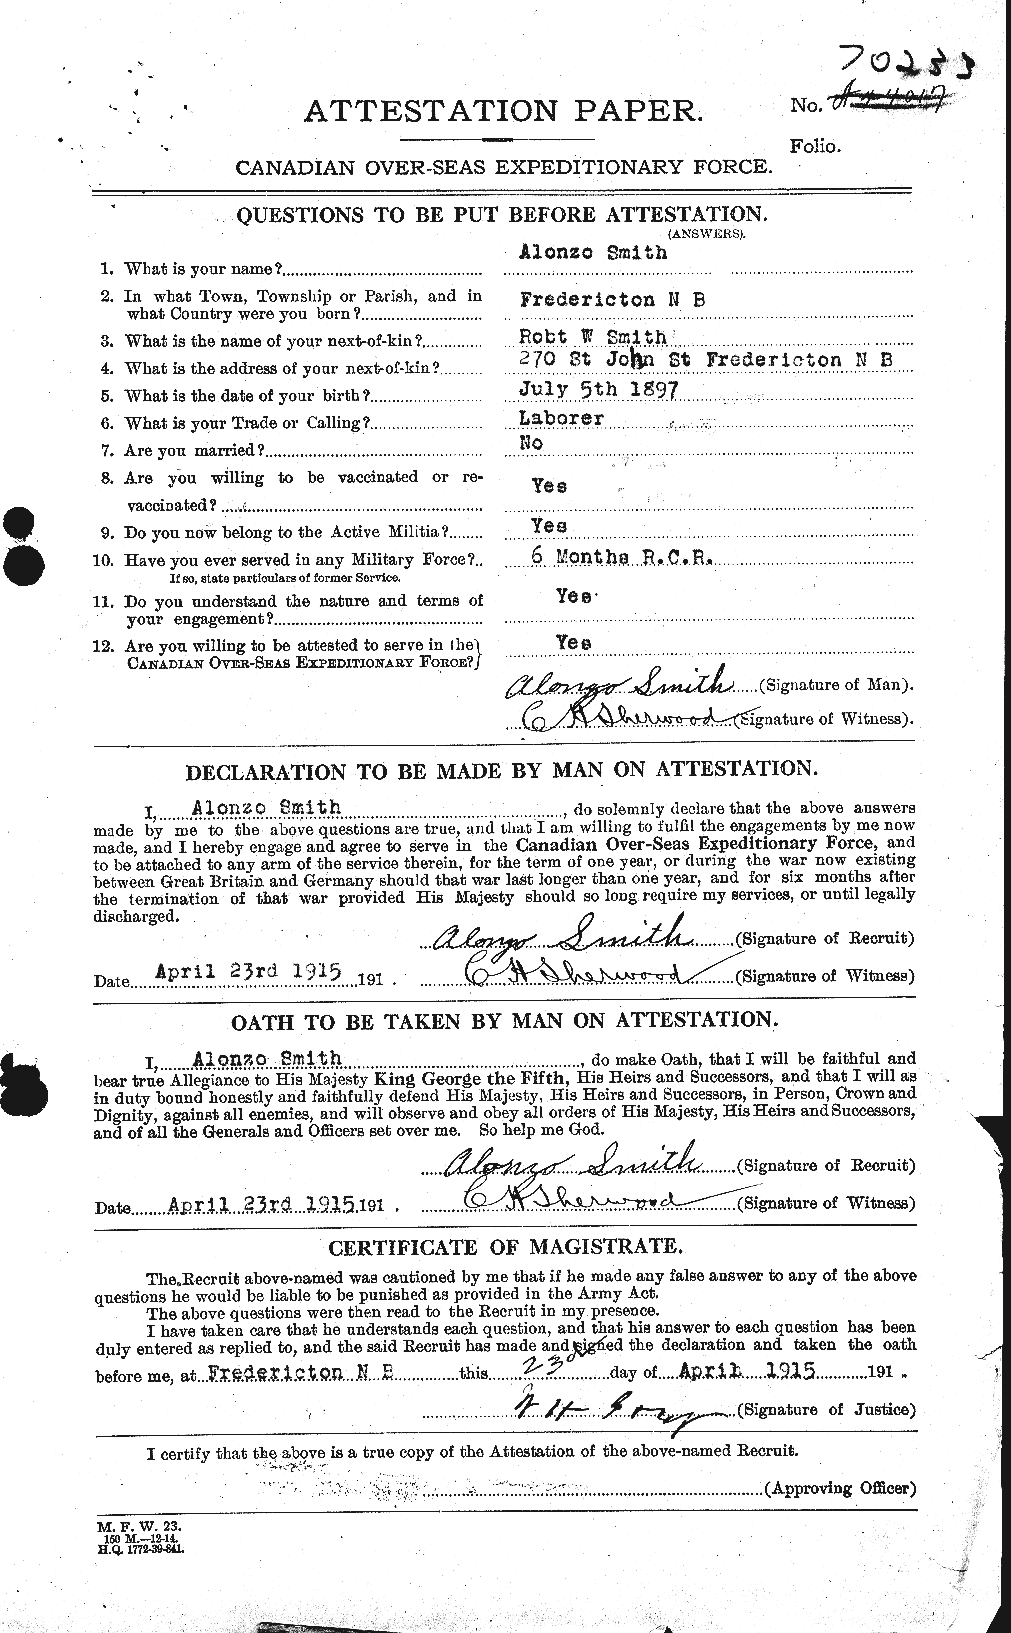 Dossiers du Personnel de la Première Guerre mondiale - CEC 102784a